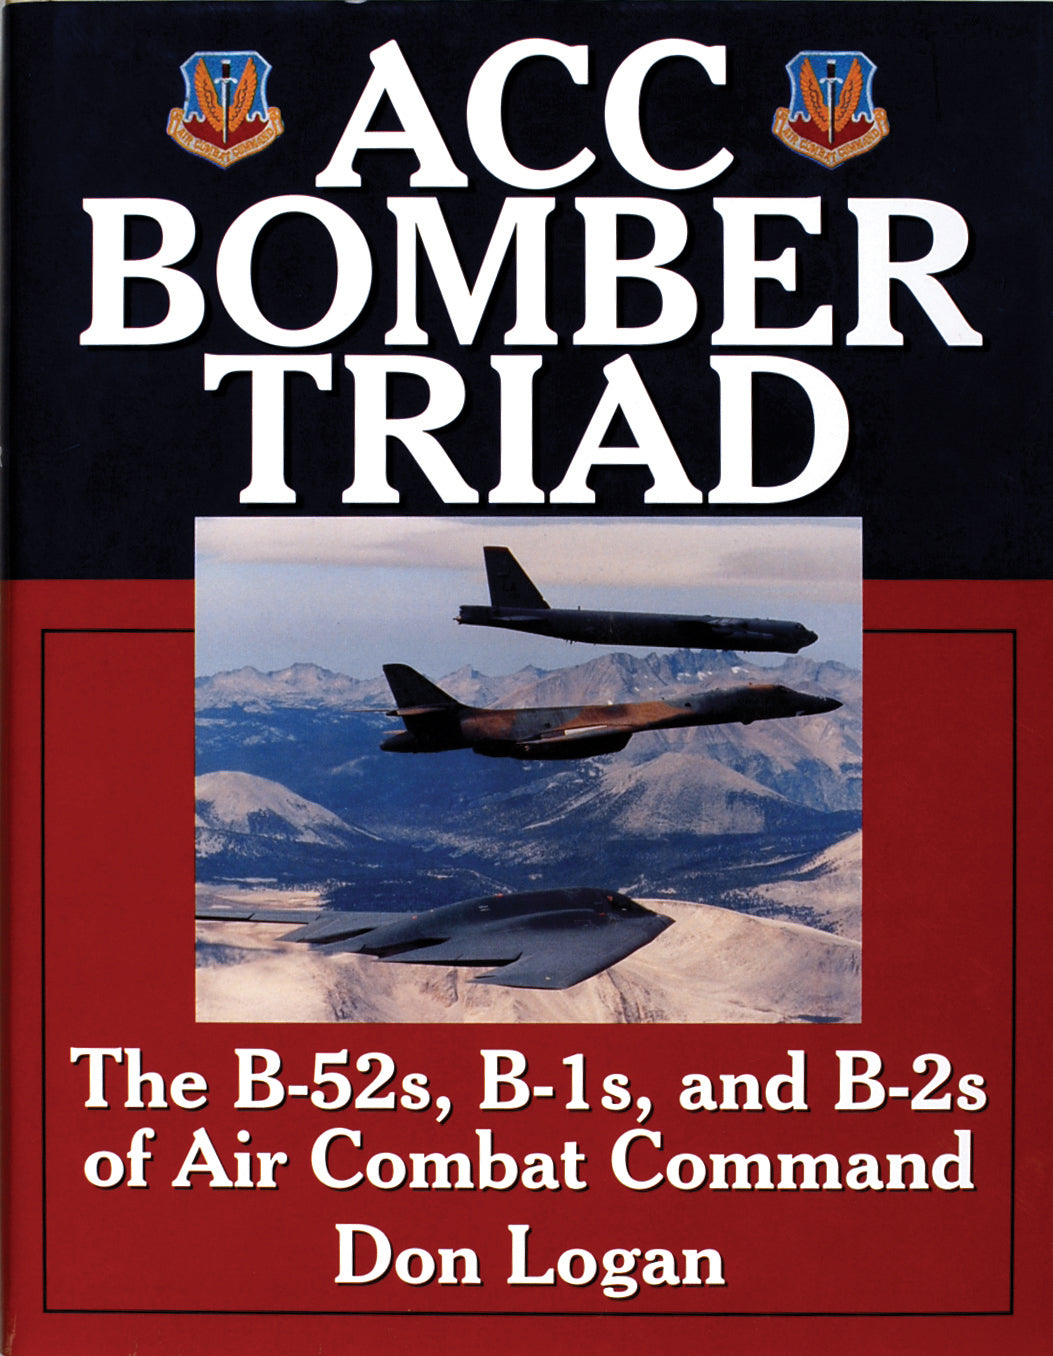 ACC Bomber Triad